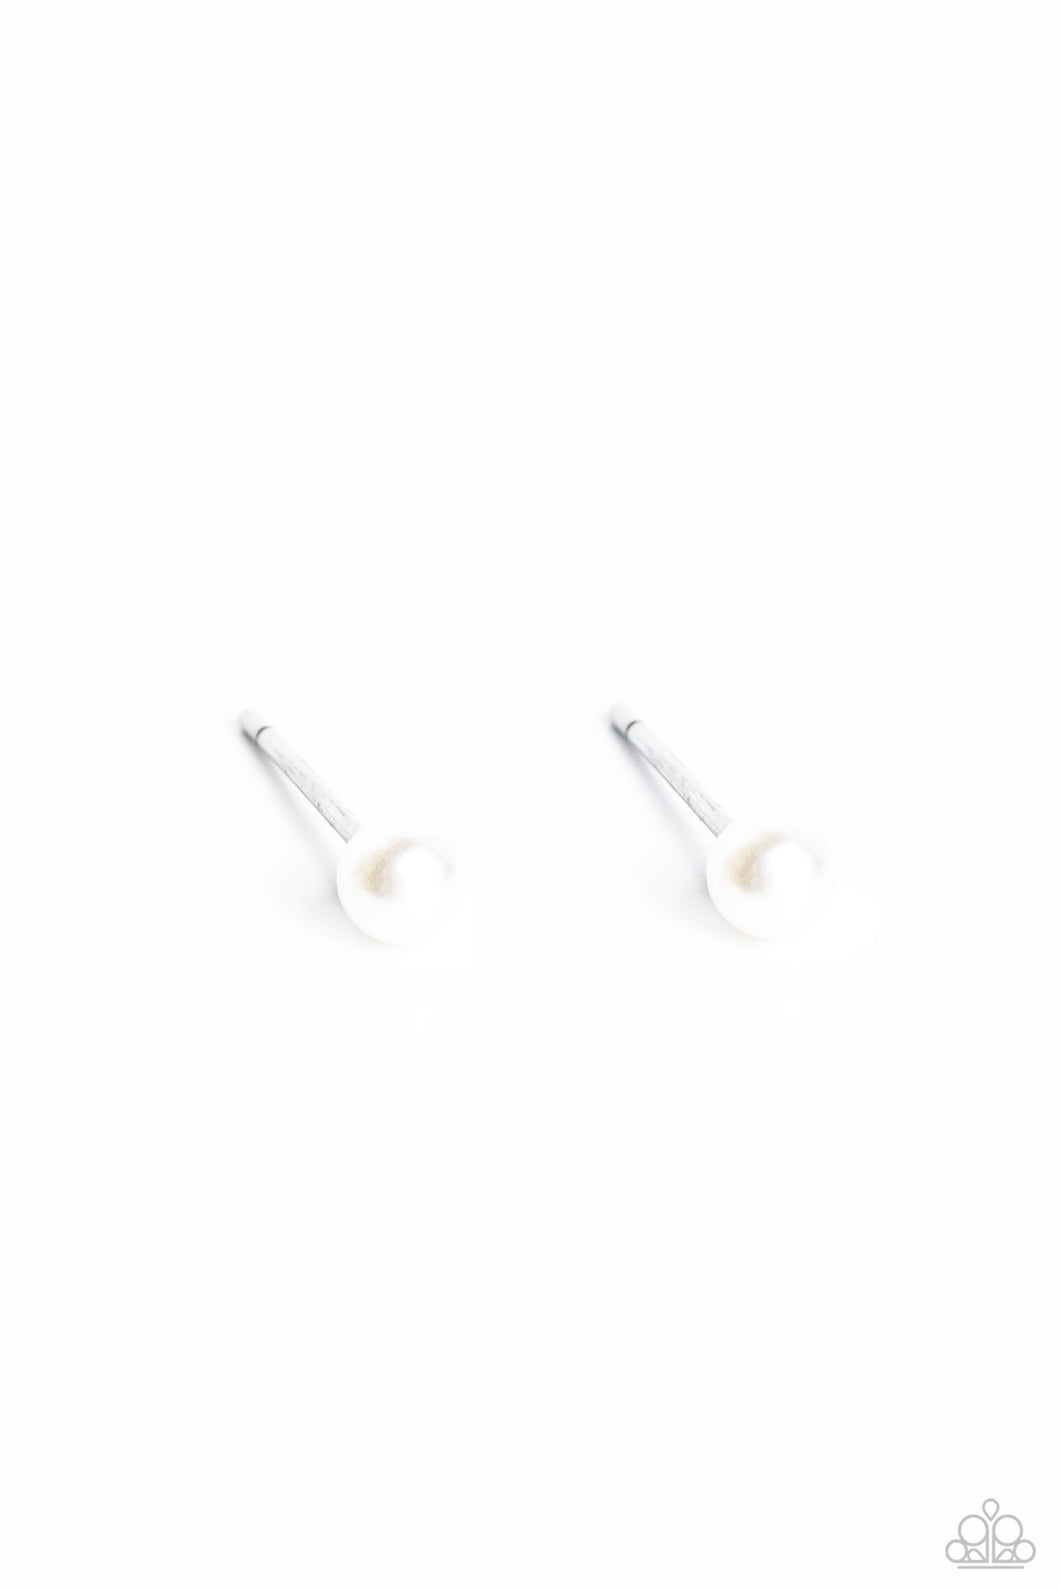 Dainty Details - White Earrings